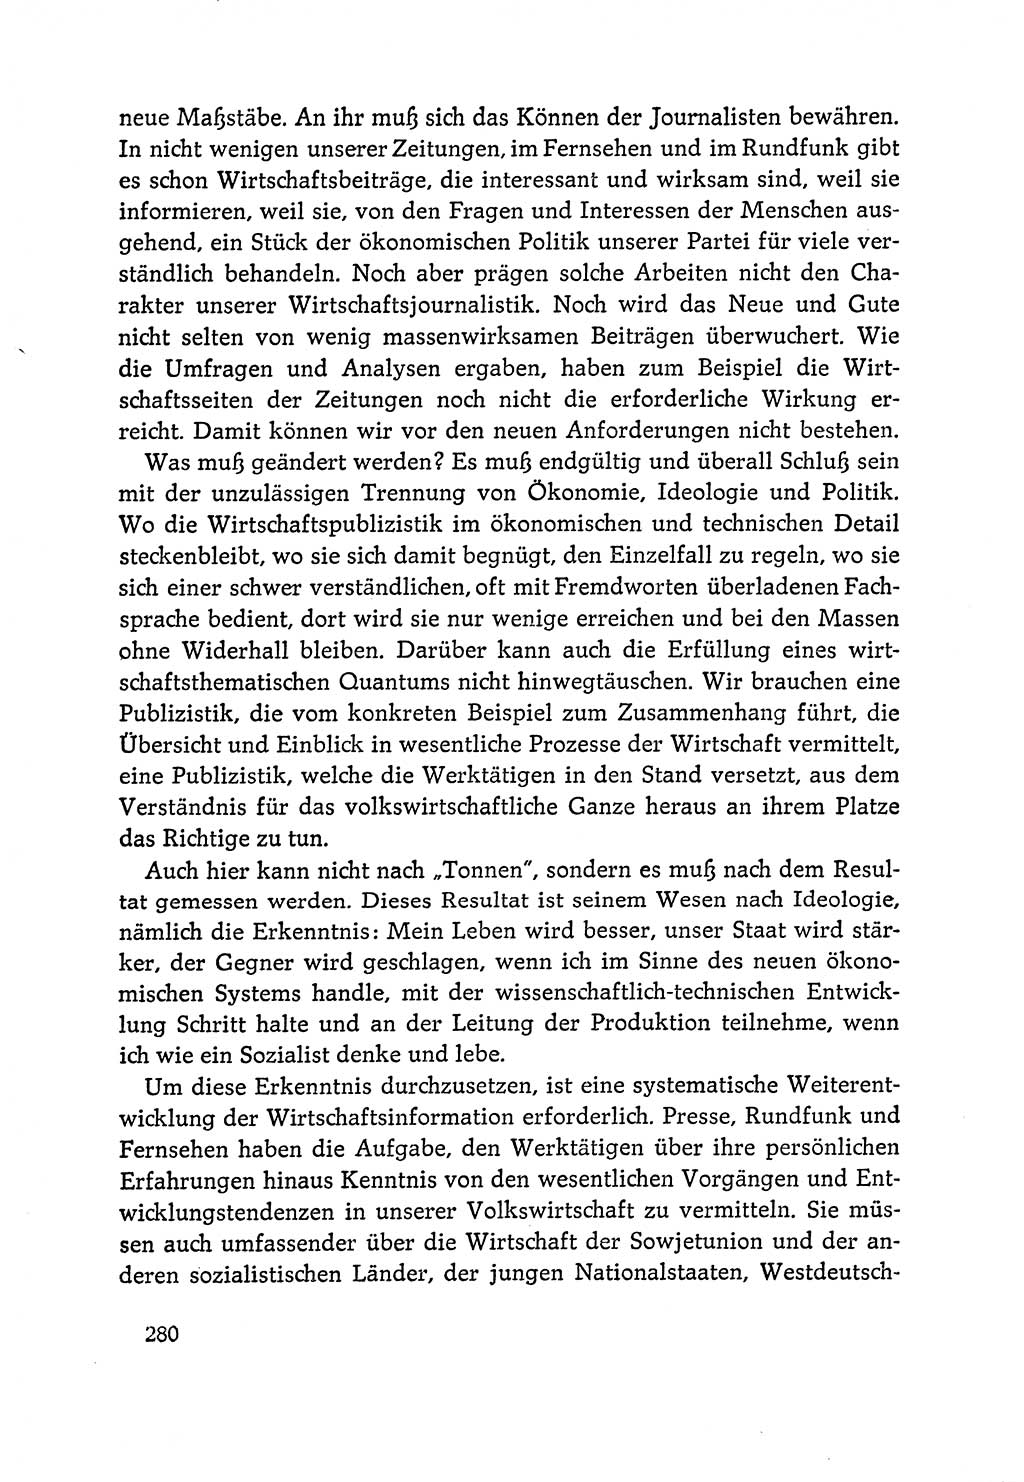 Dokumente der Sozialistischen Einheitspartei Deutschlands (SED) [Deutsche Demokratische Republik (DDR)] 1964-1965, Seite 280 (Dok. SED DDR 1964-1965, S. 280)